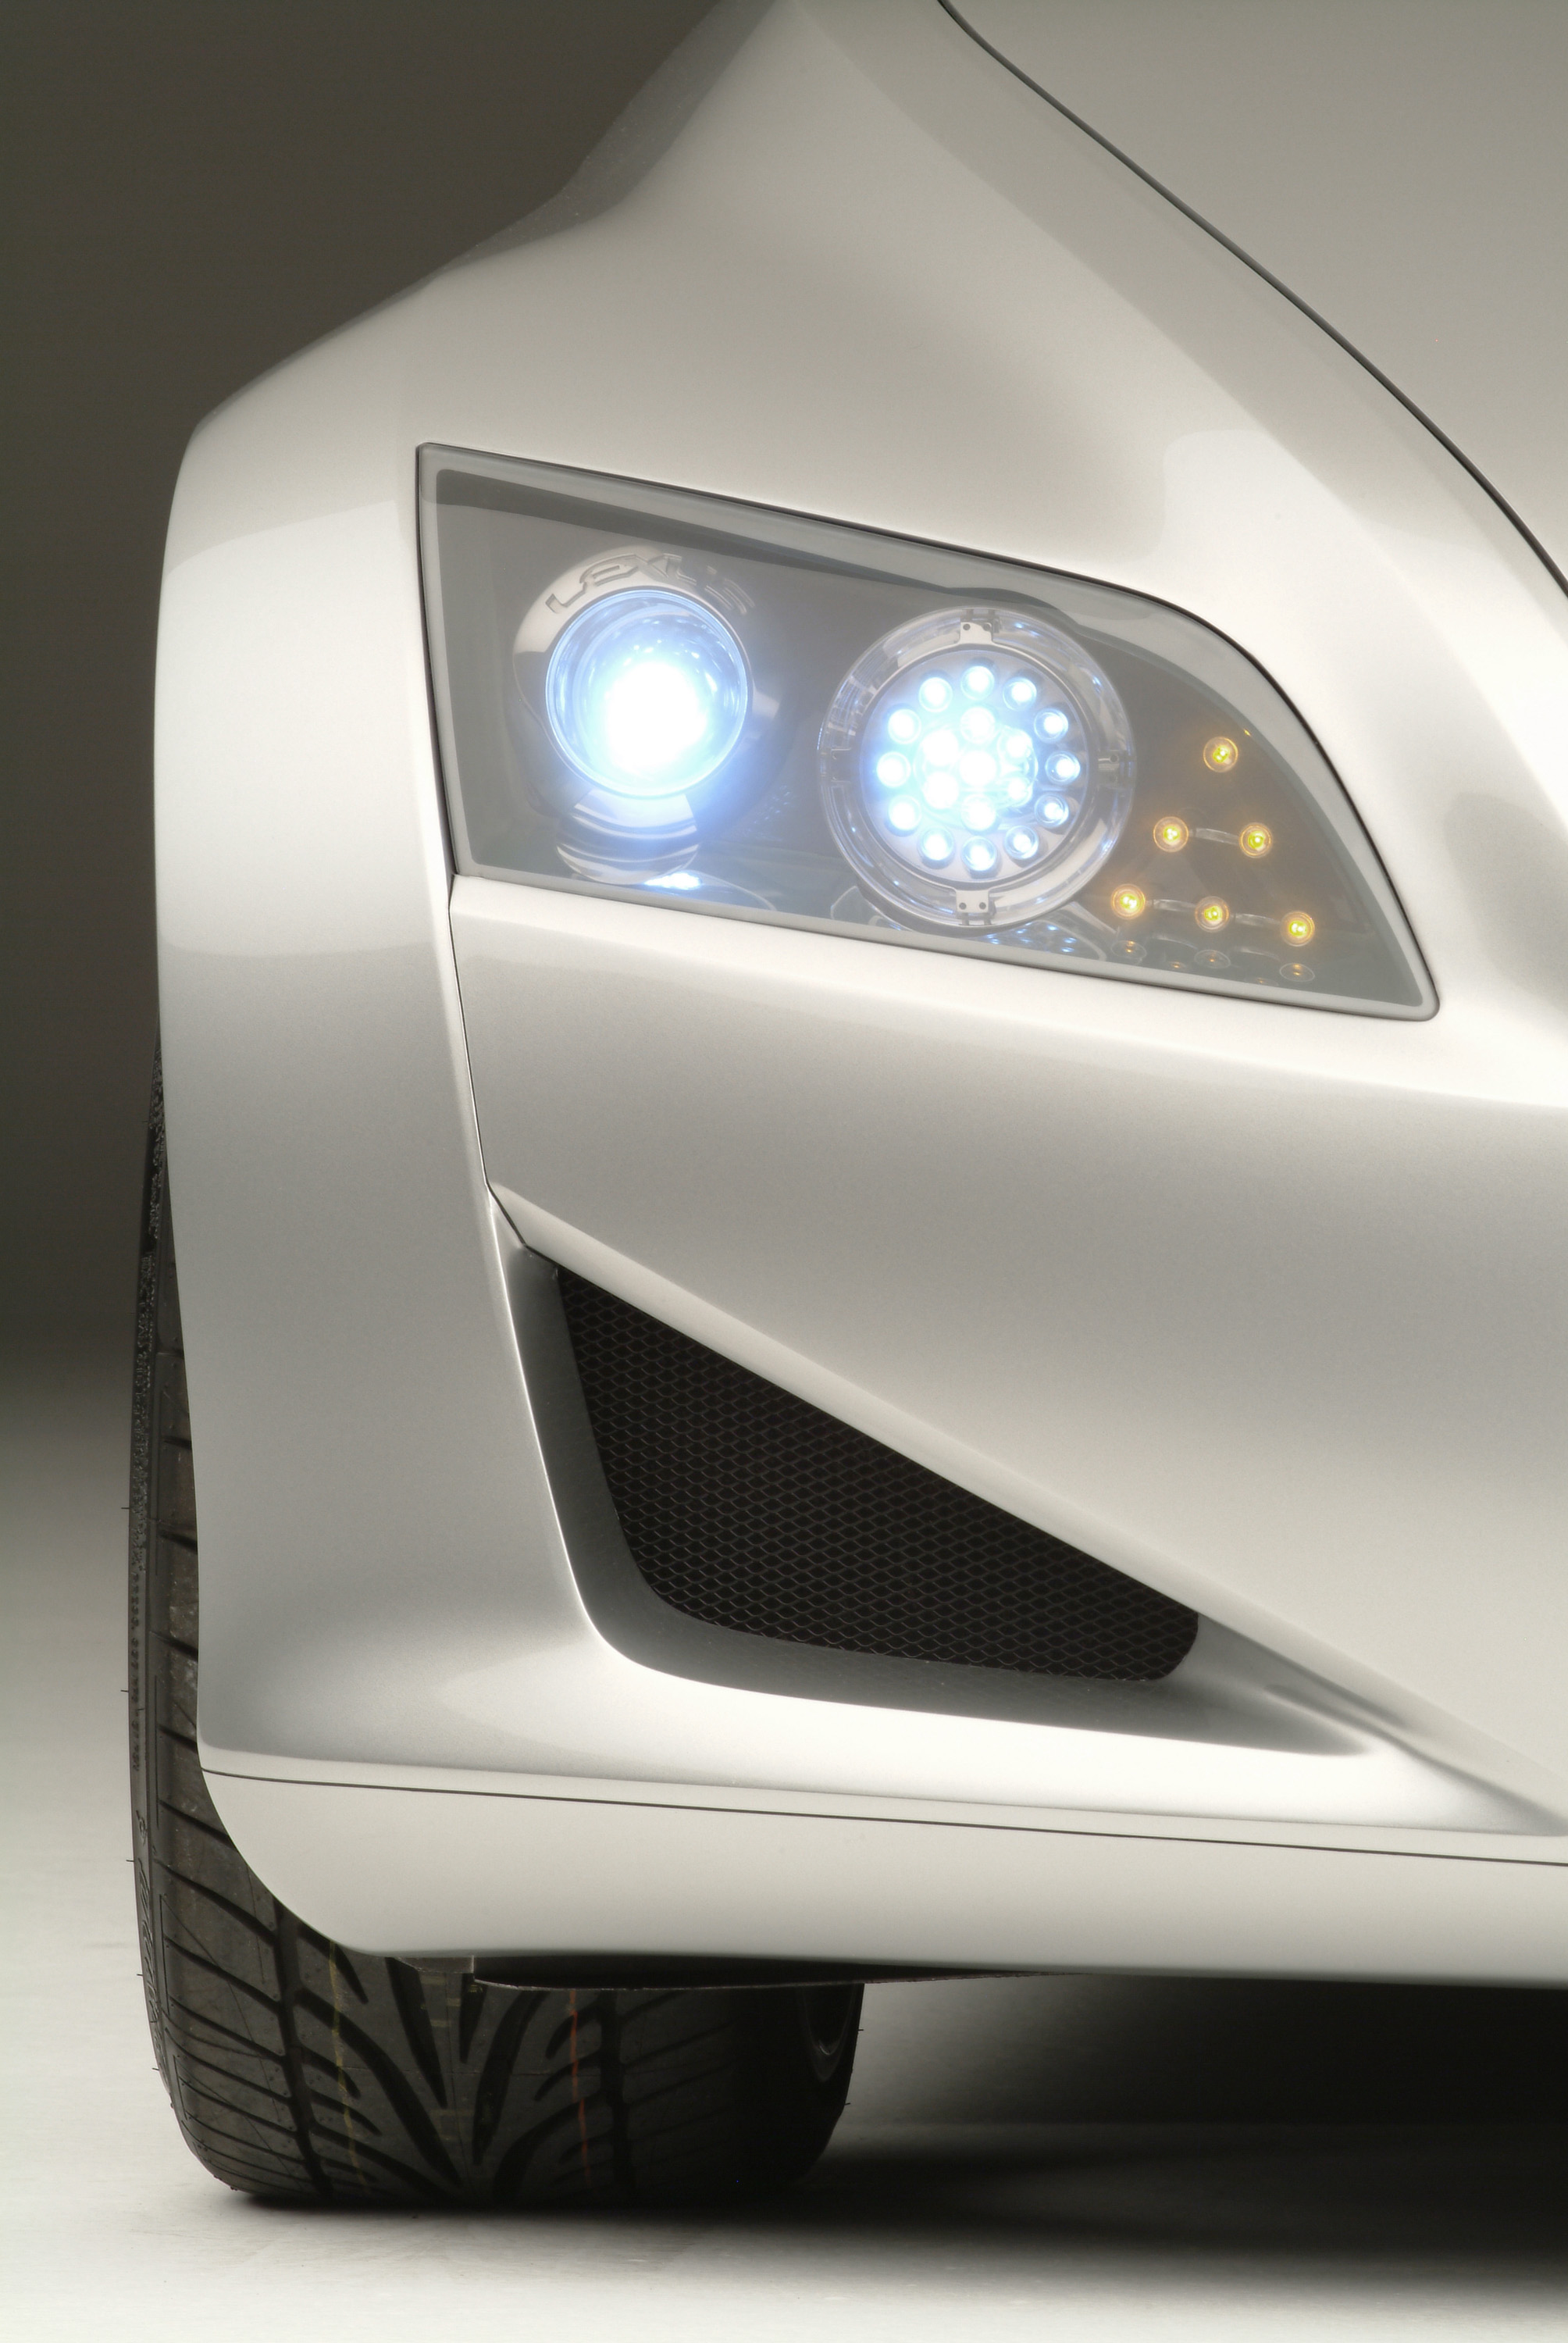 Lexus LF-C Concept